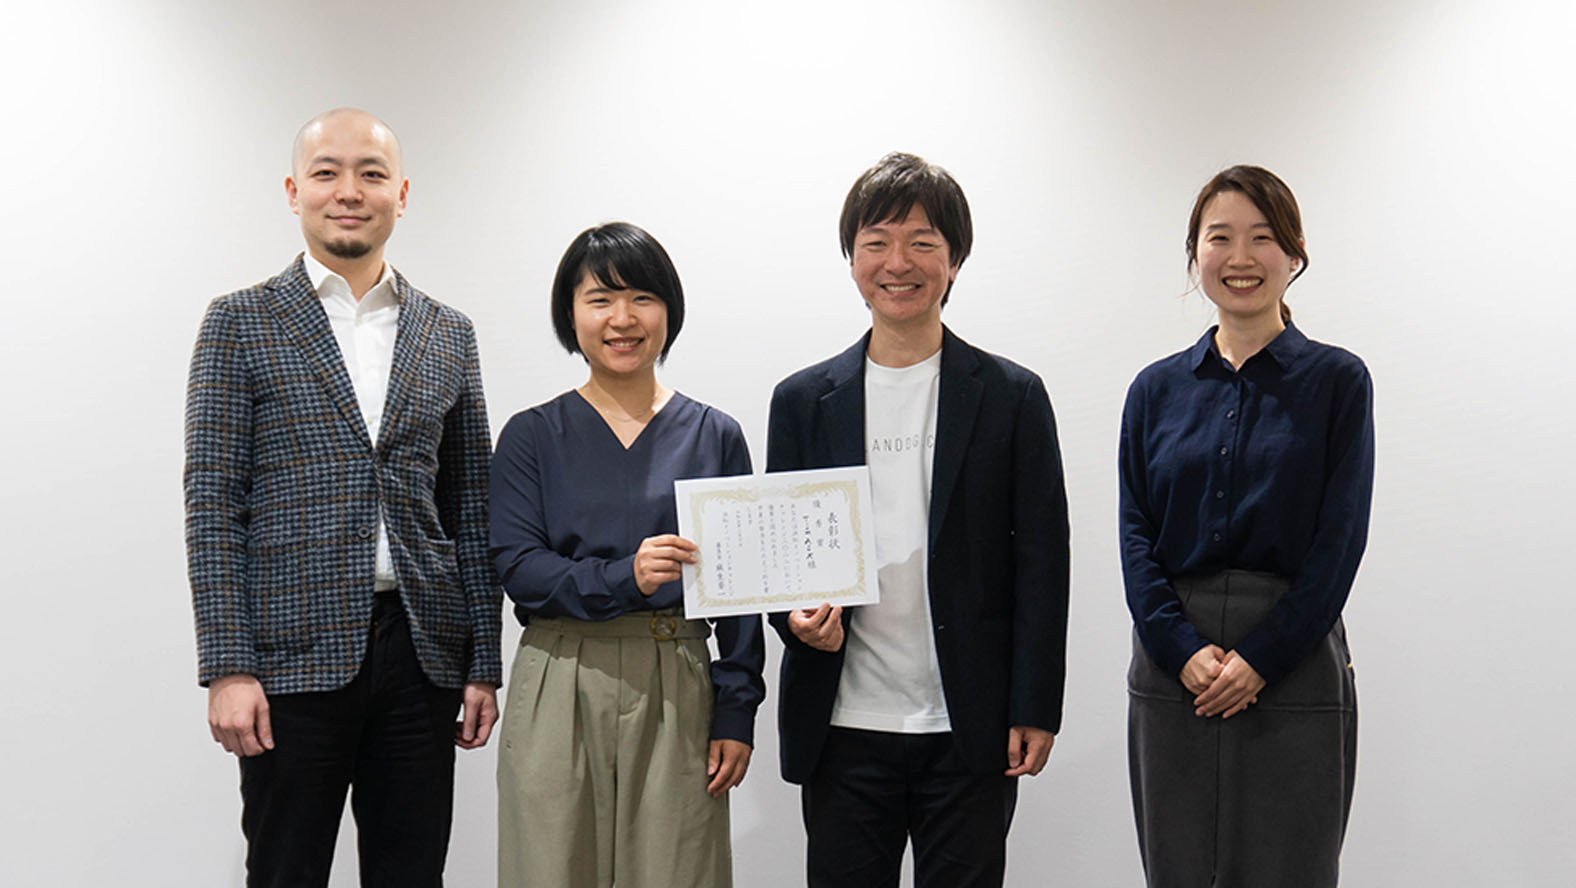 شارك فريق Roland DG في برنامج تحدي هاماماتسو للابتكار 2022